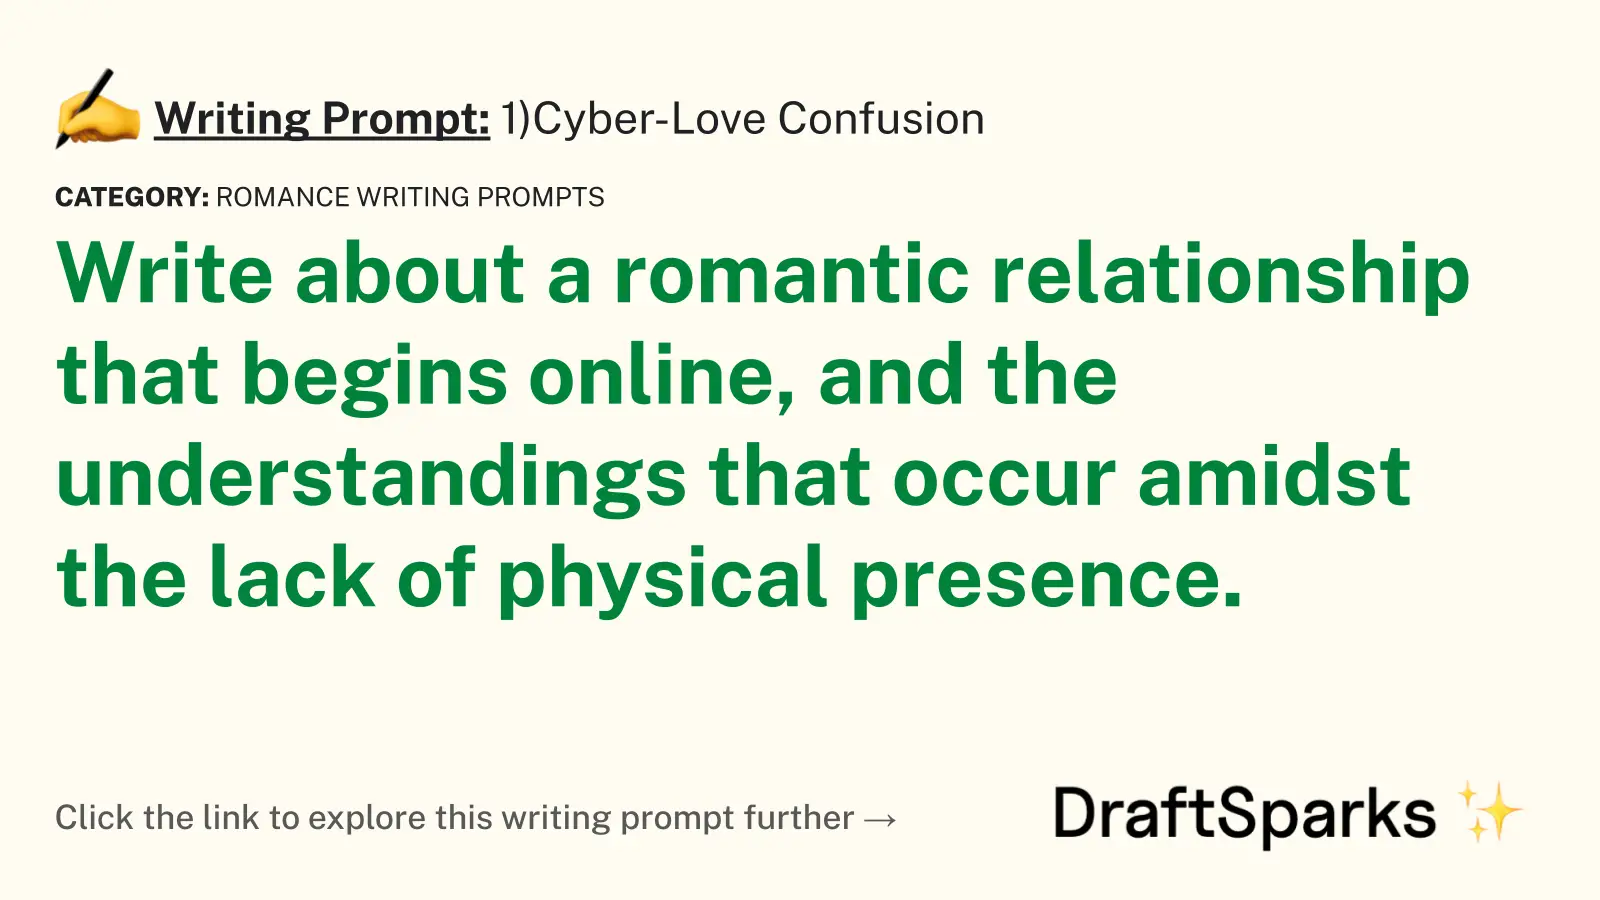 1)Cyber-Love Confusion